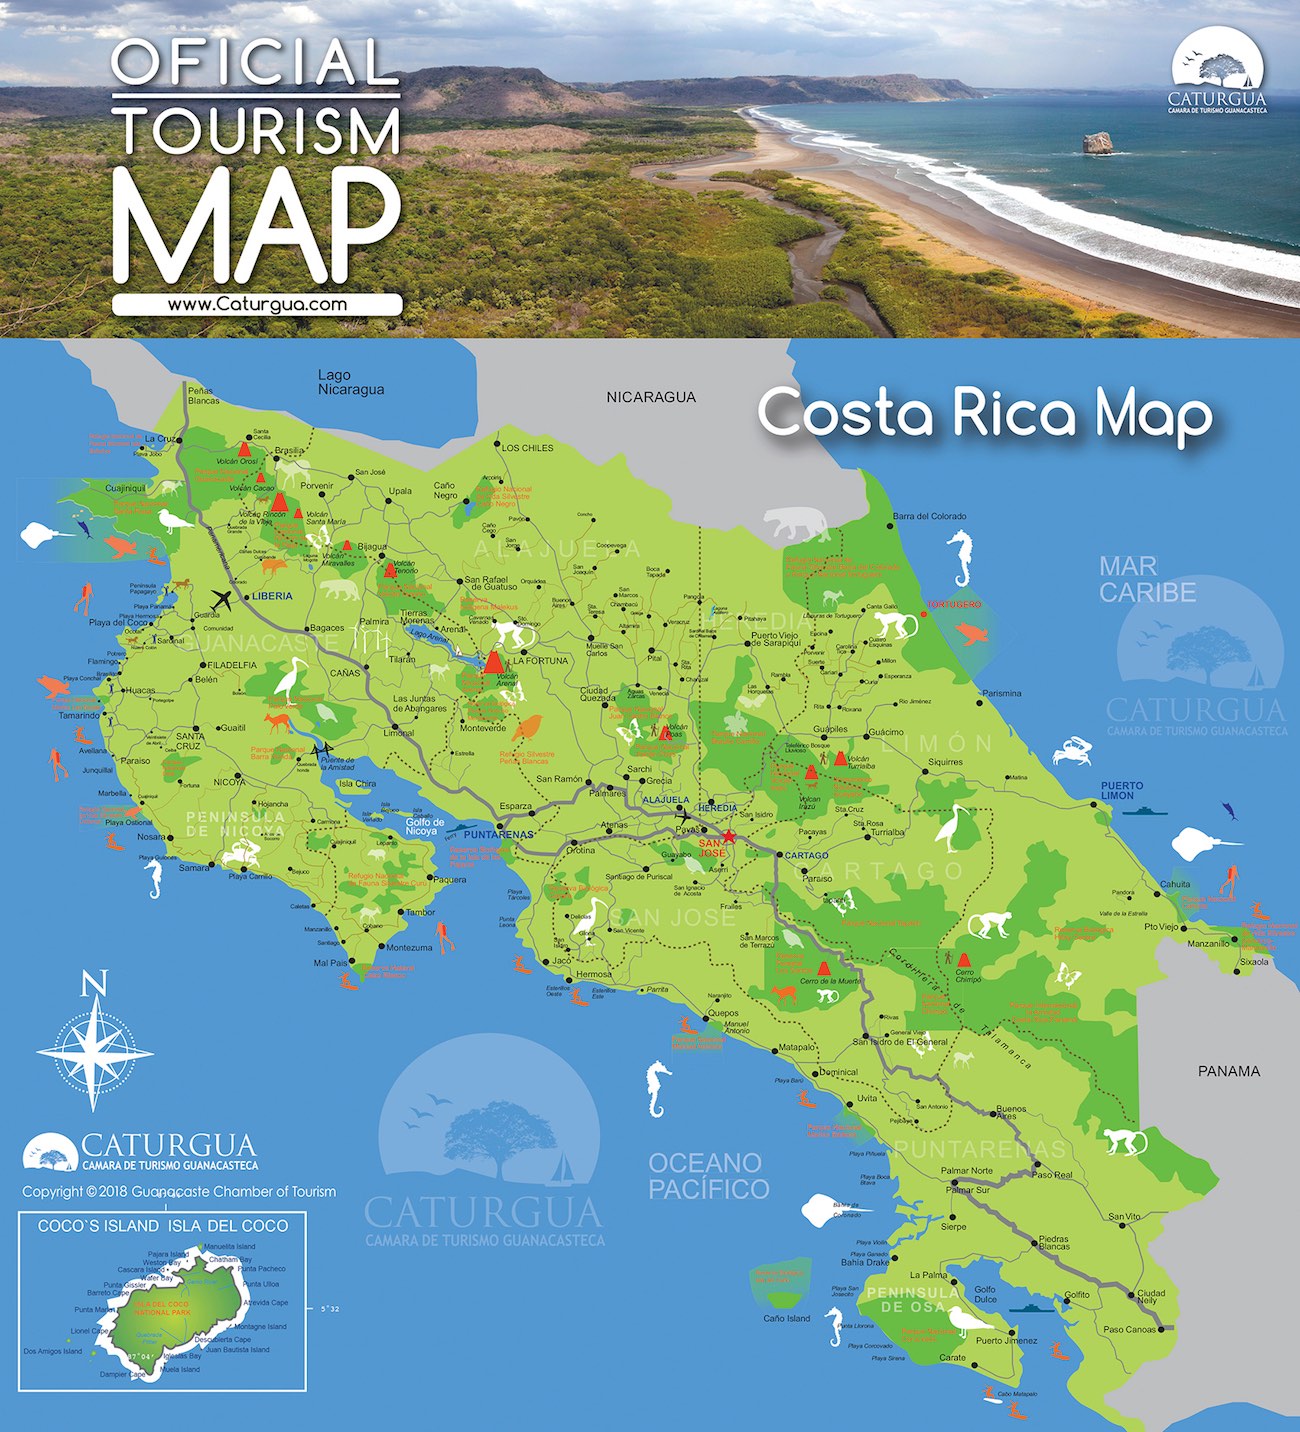 Map of CostaRica Caturgua 2018